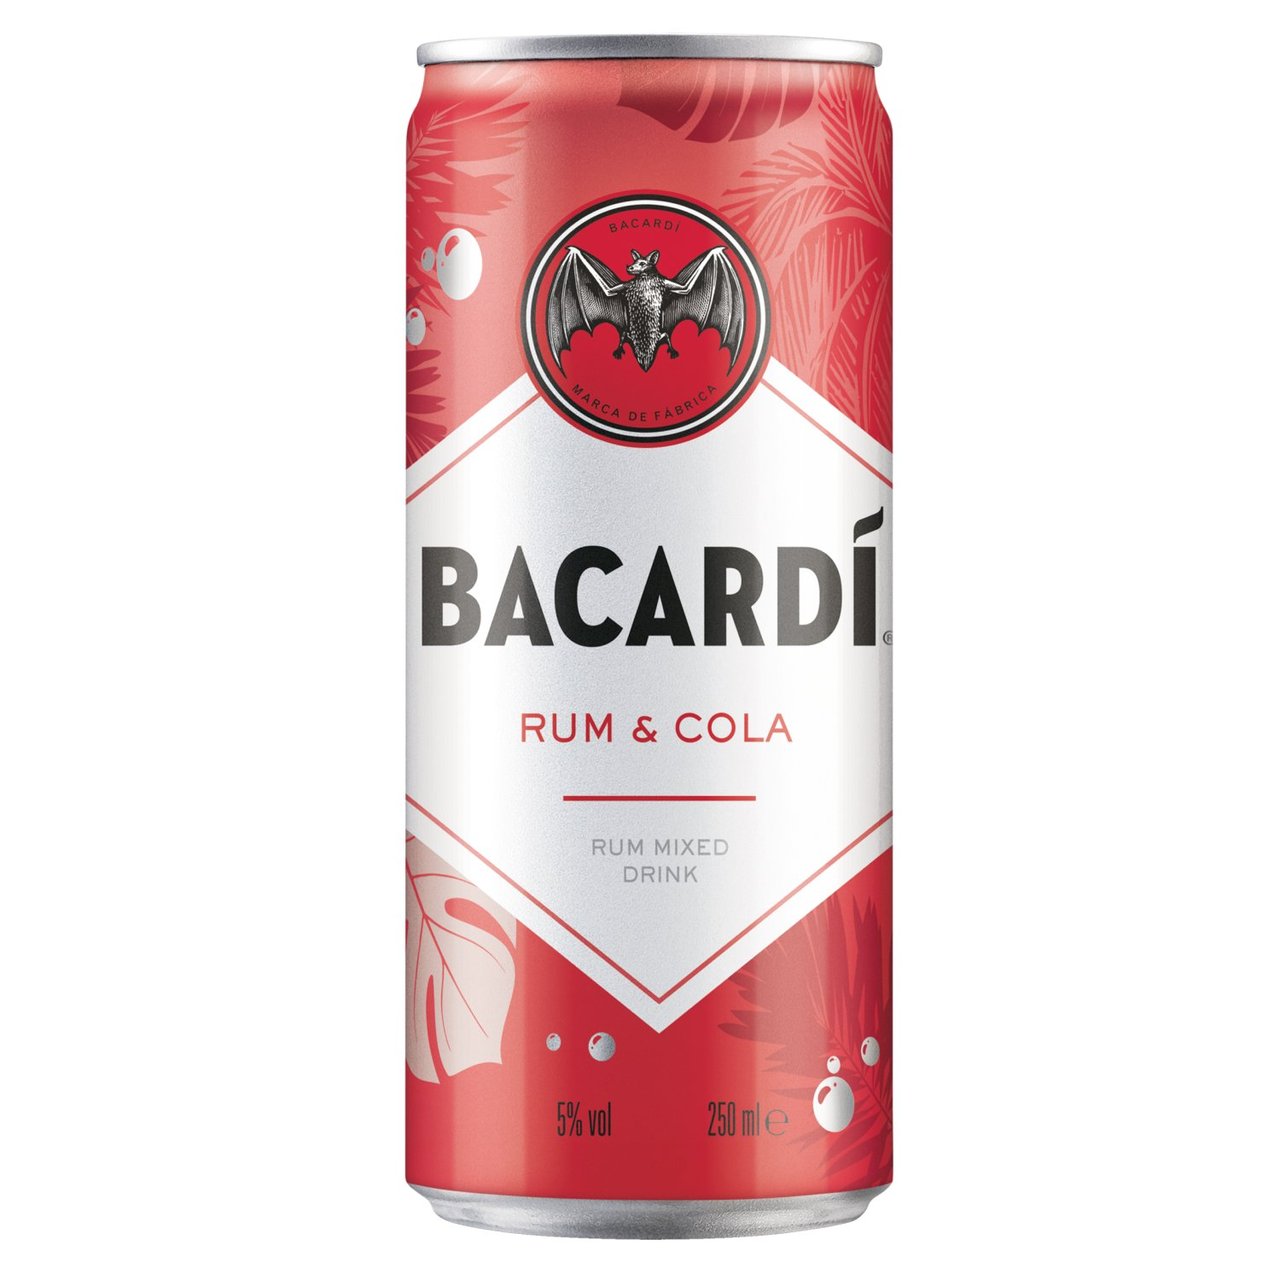 Bacardi Rum & Cola Rum Mixed Drink 250ml